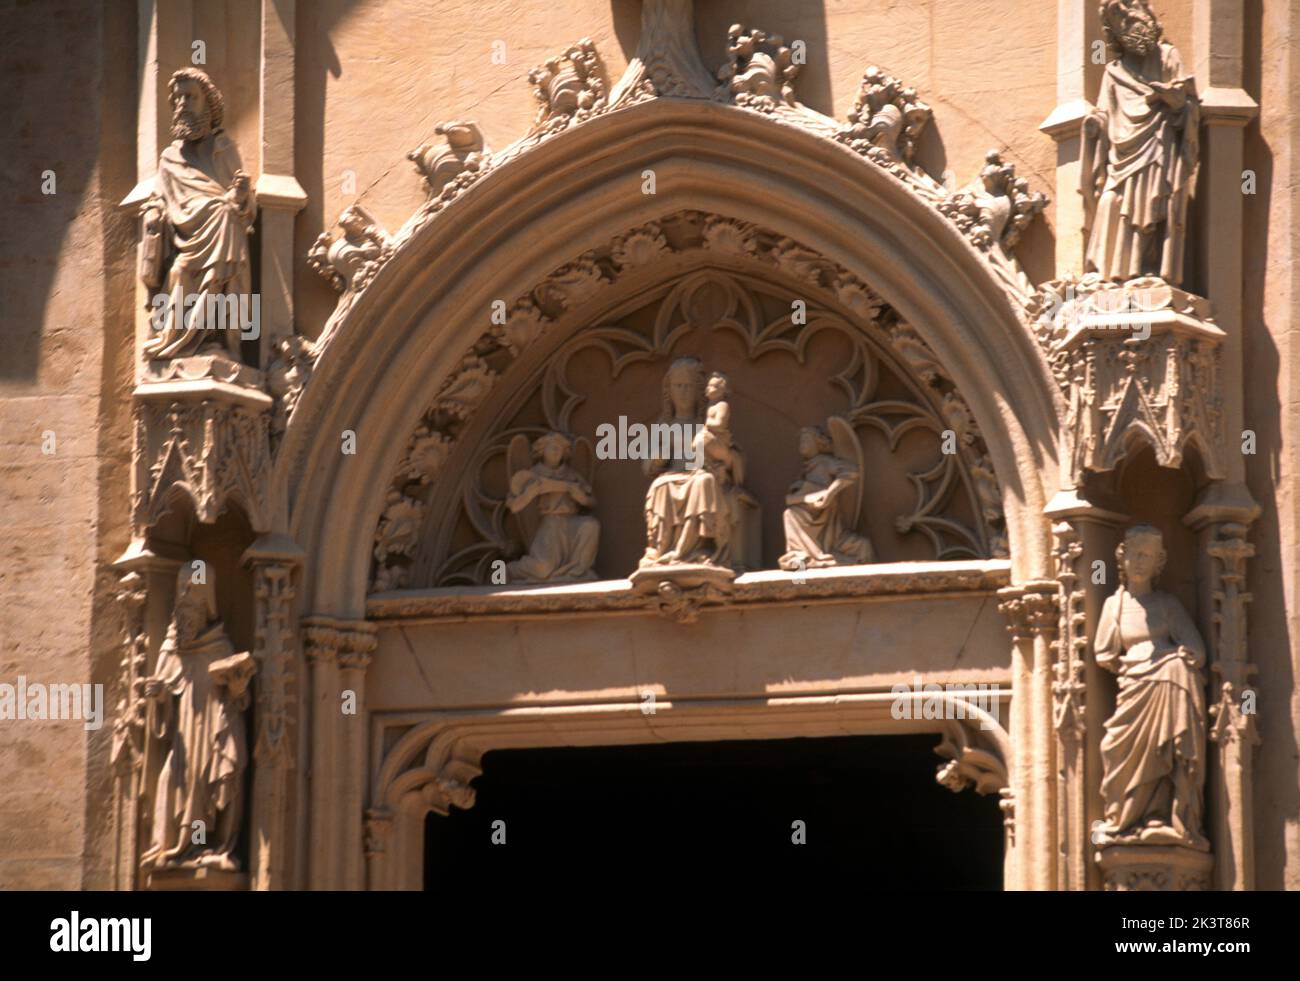 Légende Palma Majorque ( Majorque ) Iles Baléares Espagne le Seu Cathédrale détail de la Vierge Marie et de l'enfant Jésus au-dessus du Portail Banque D'Images